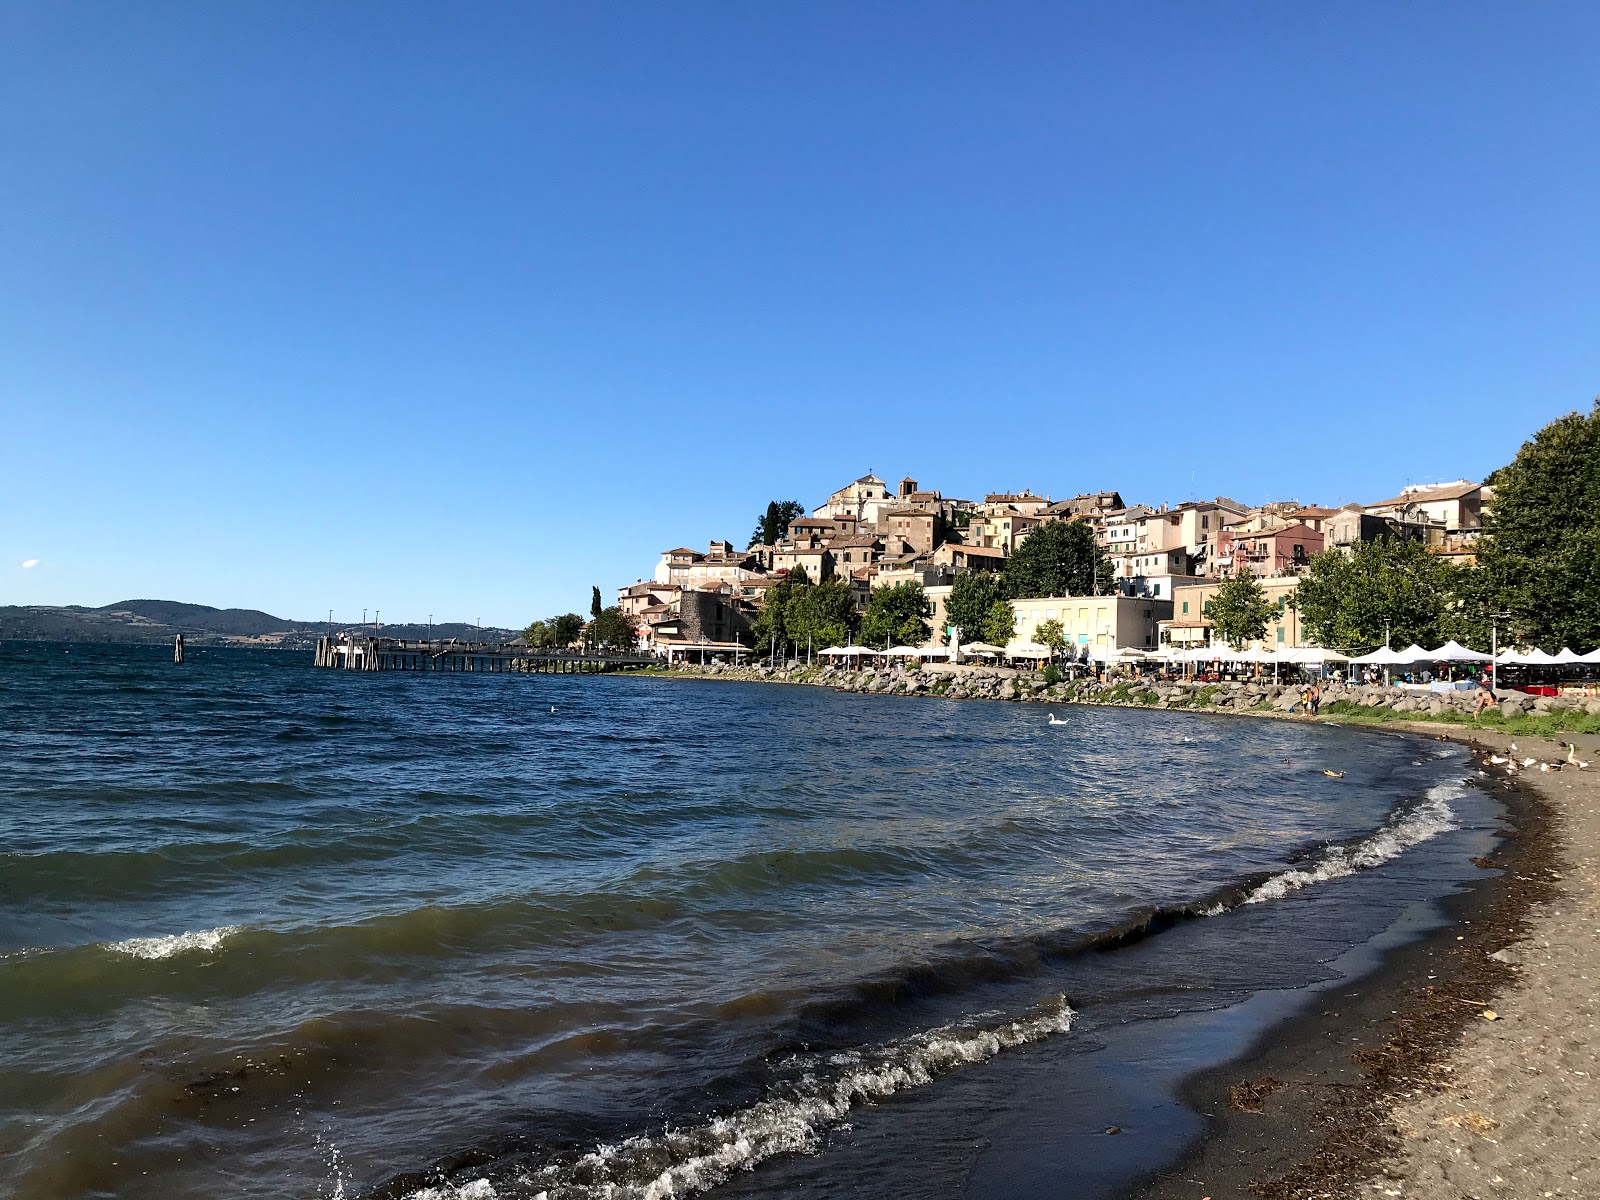 Foto av Spiaggia Libera - populär plats bland avkopplingskännare